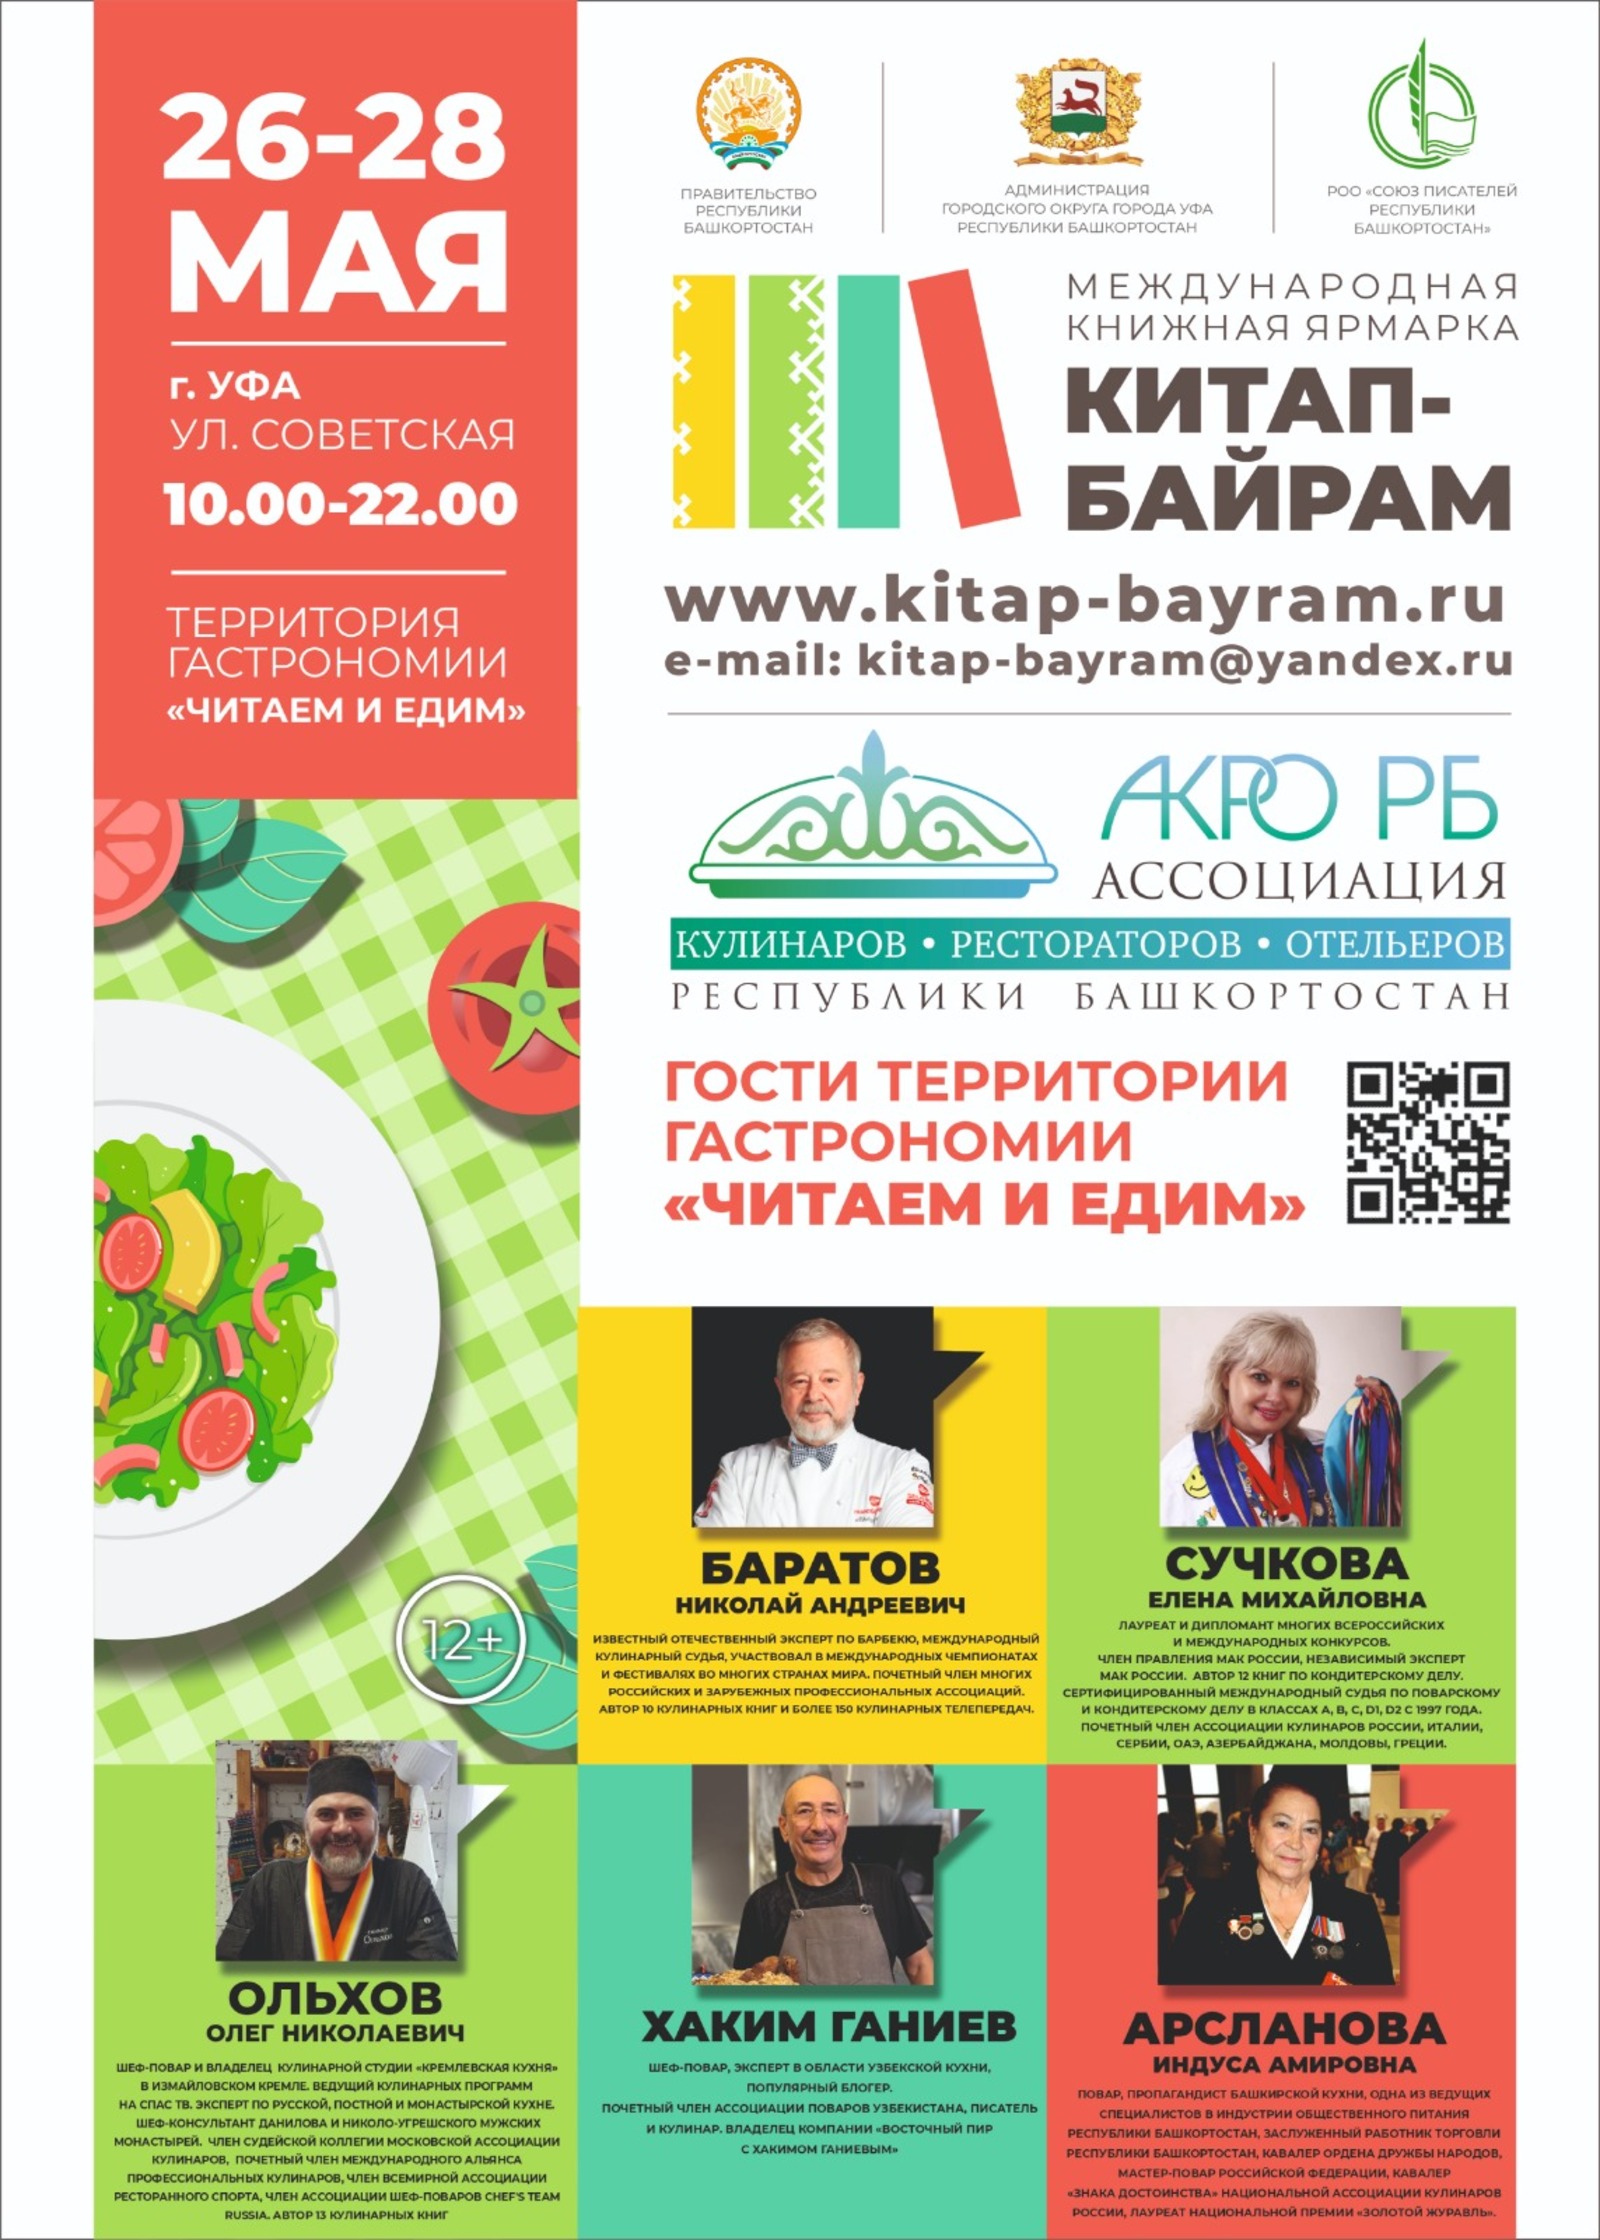 26-28 мая в Уфе будет проходить международная книжная ярмарка "Китап-байрам"